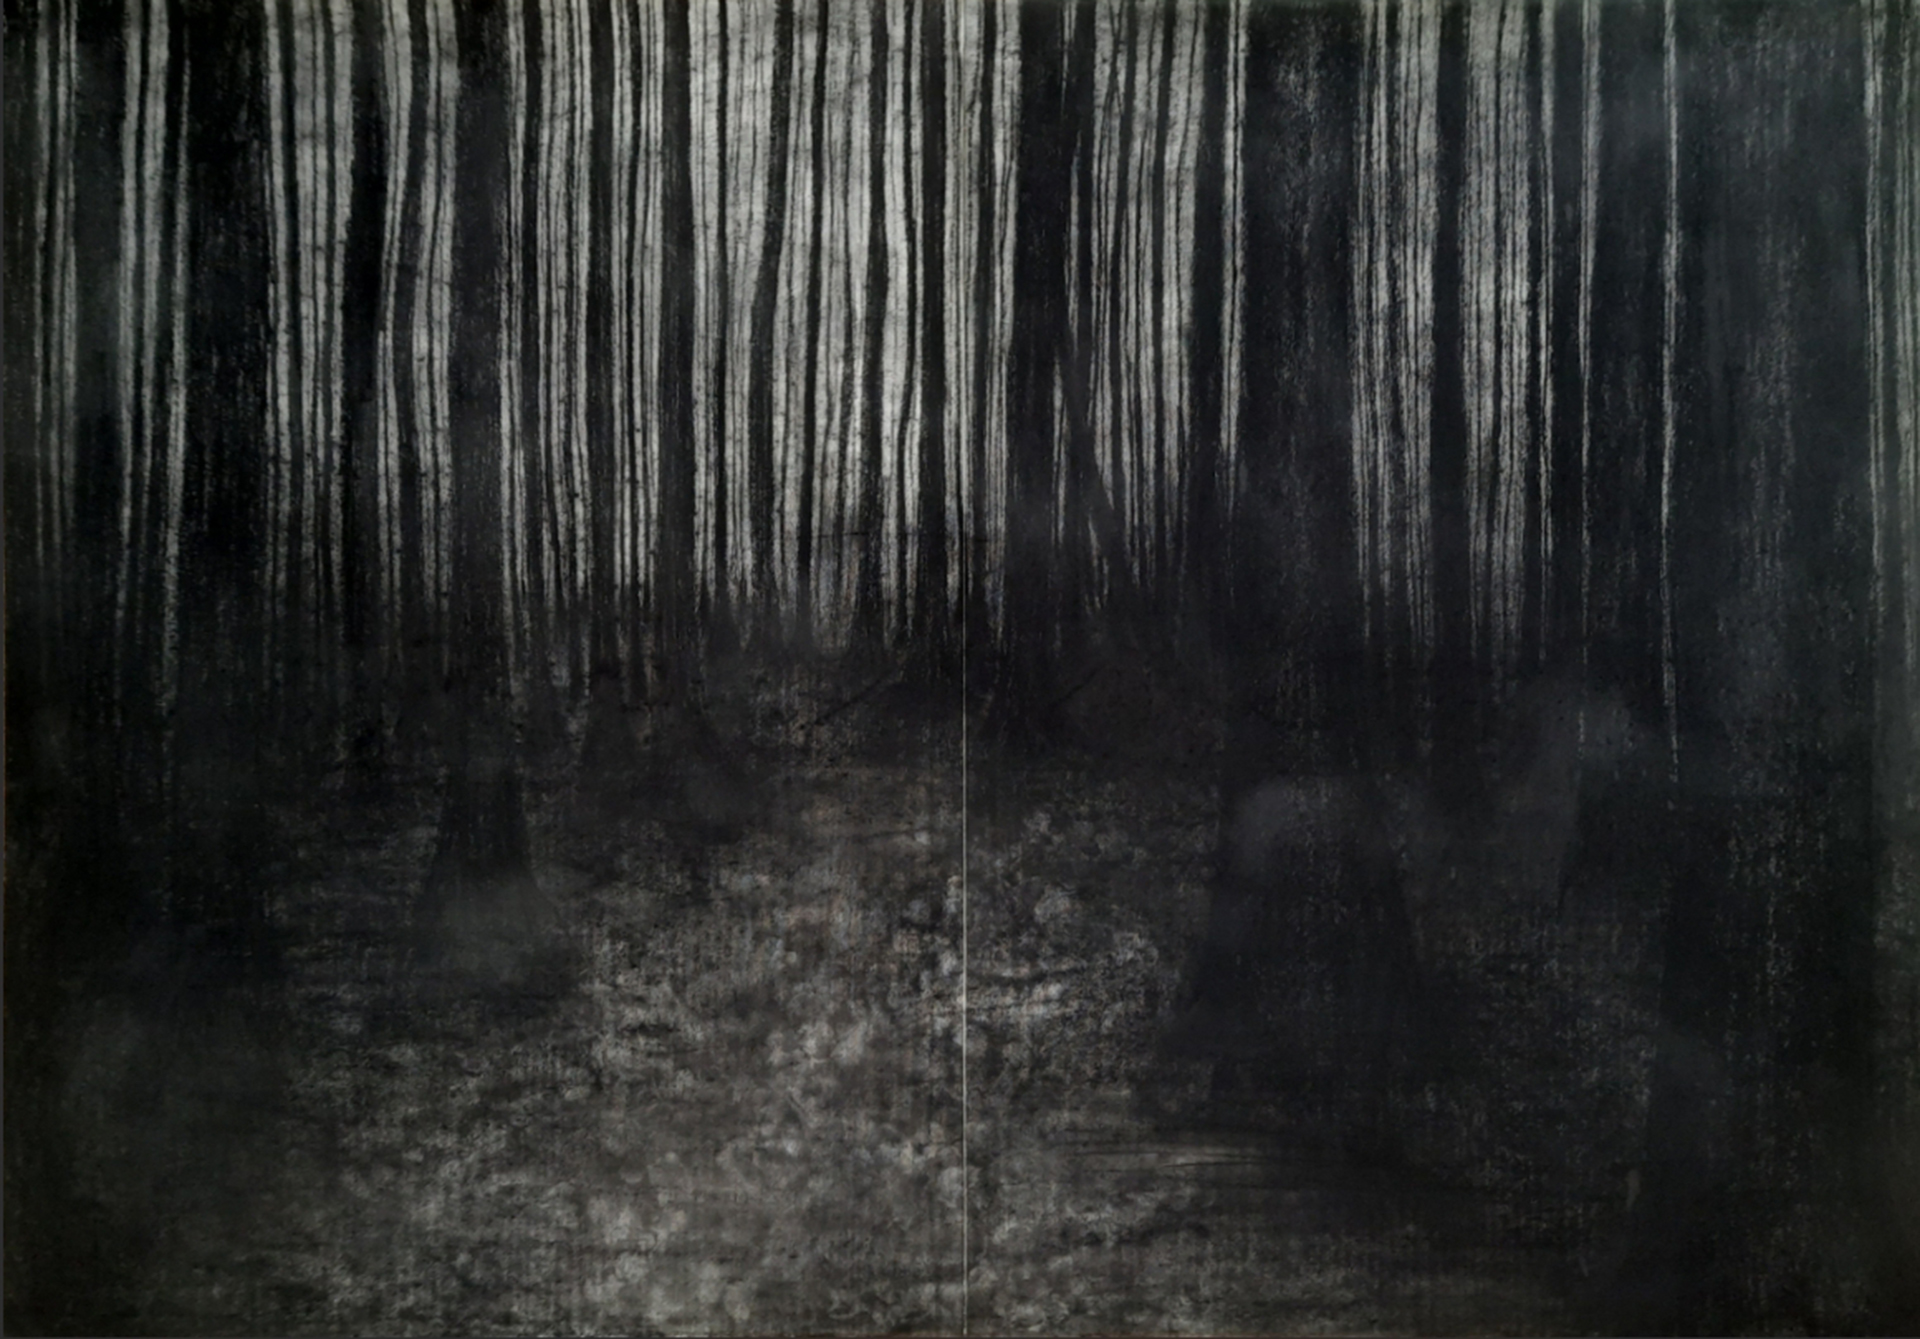 Czarny rysunek z pionowymi pasami różnej grubości przedstawiającymi las ze rozjaśnieniem po lewej stronie od środka pracy.